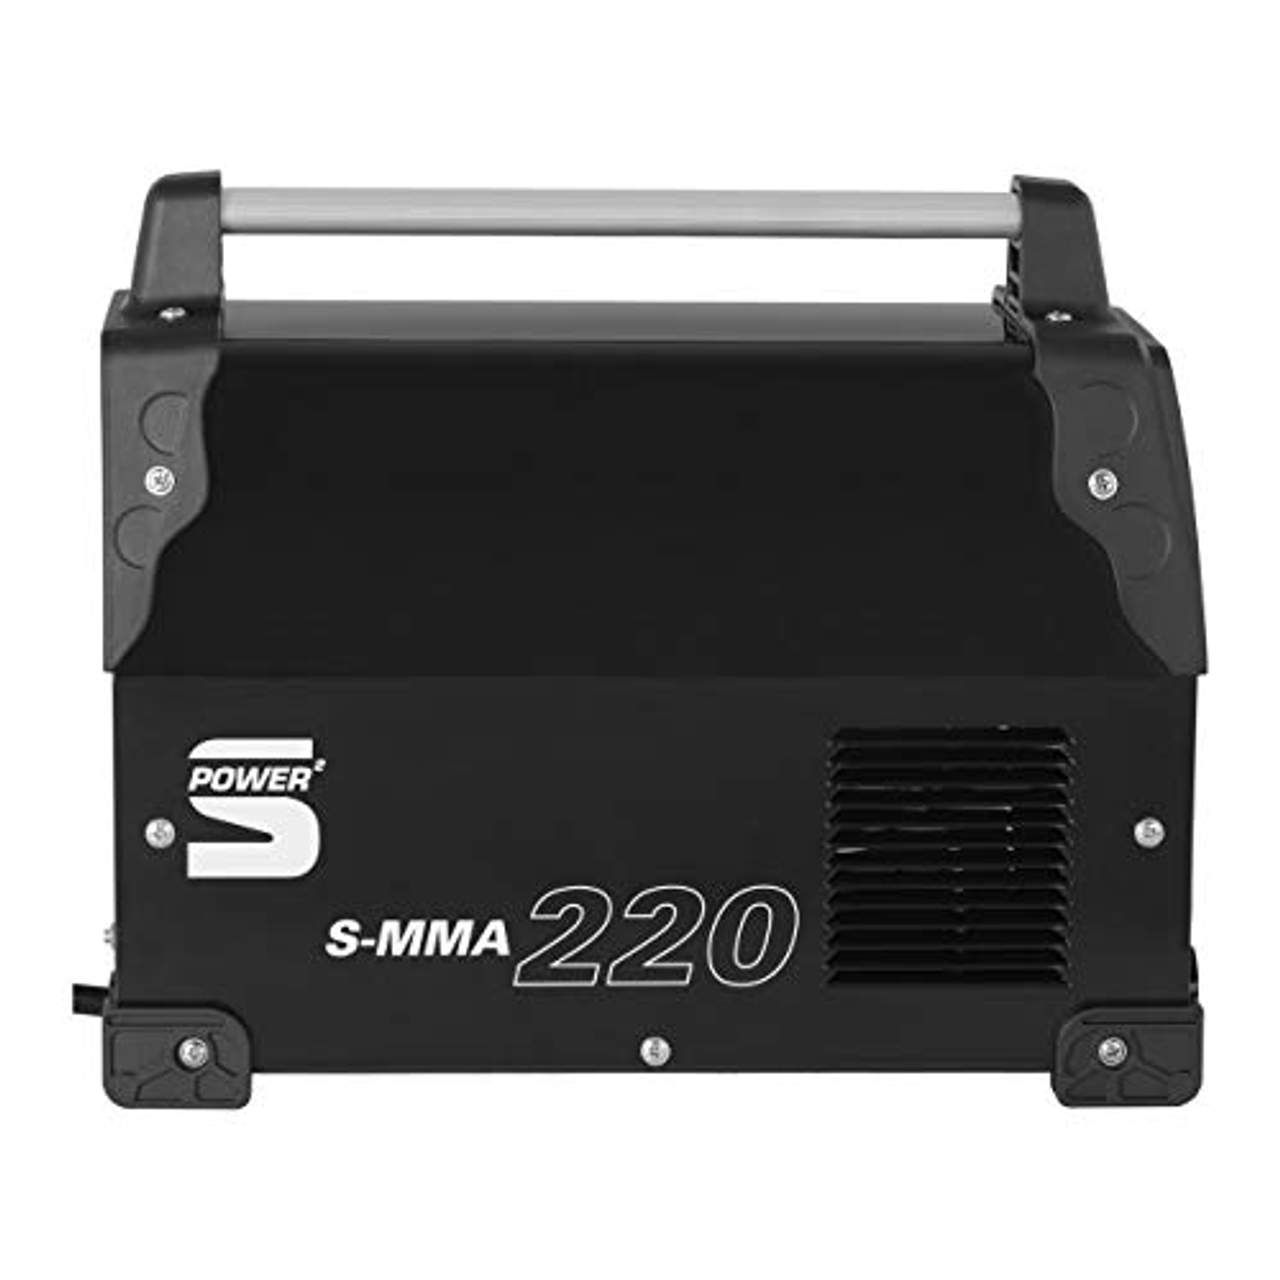 Stamos Power² S-MMA 220 Elektroden-Schweißgerät 220 A 230 V MMA Schweißer Elektrodenschweißgerät